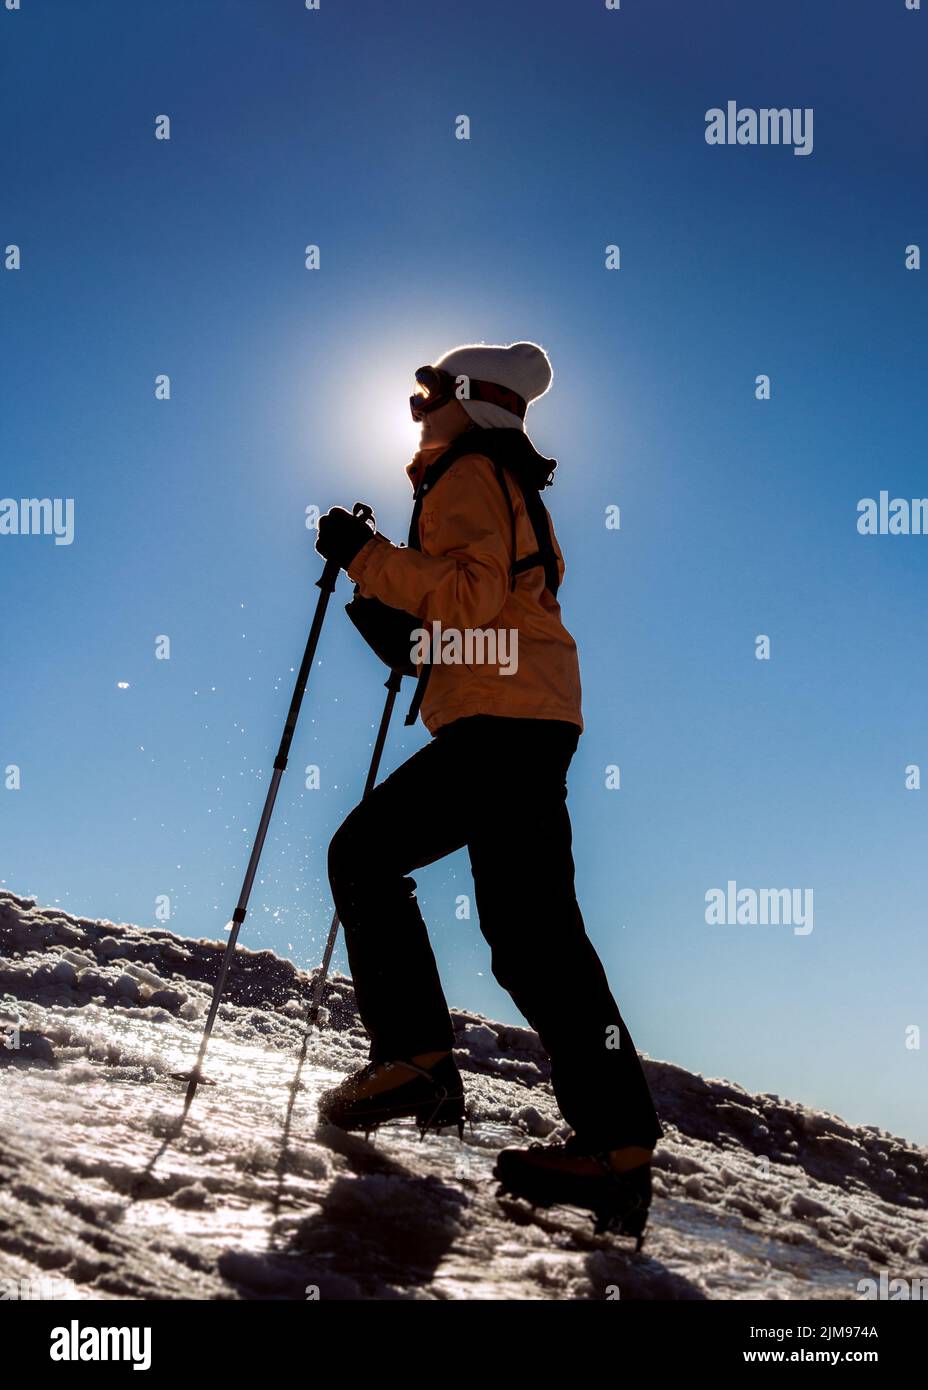 Bonne fillette montagnarde piquant des bottes dans la neige dure qui monte sur le sommet. Concept de randonnée, détermination, courage, réalisation de soi. Internatio Banque D'Images